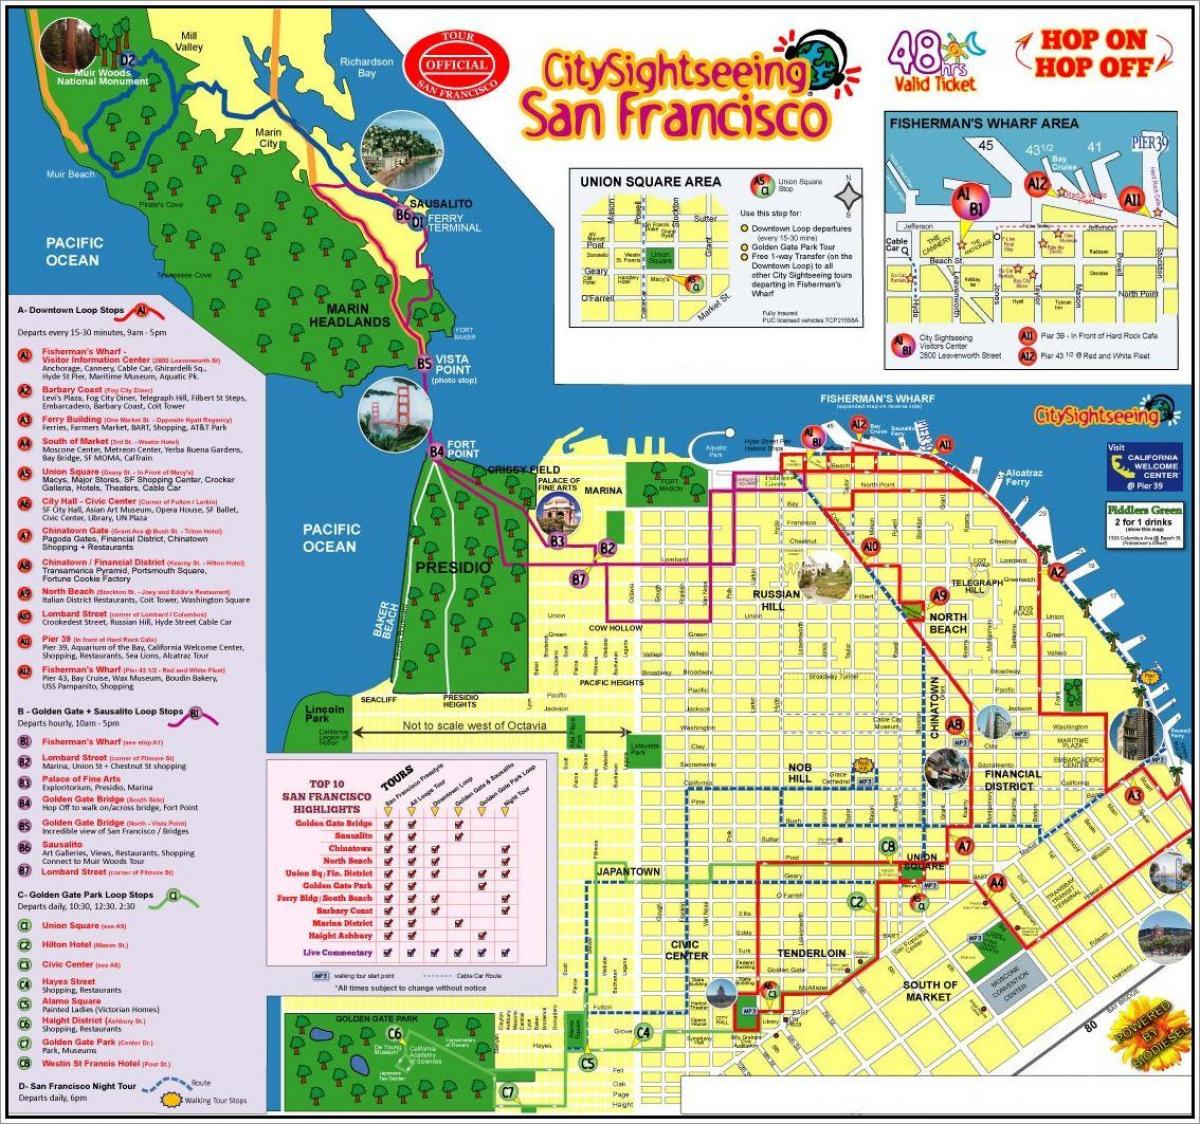 San Francisco hop on hop off bus tour hartă